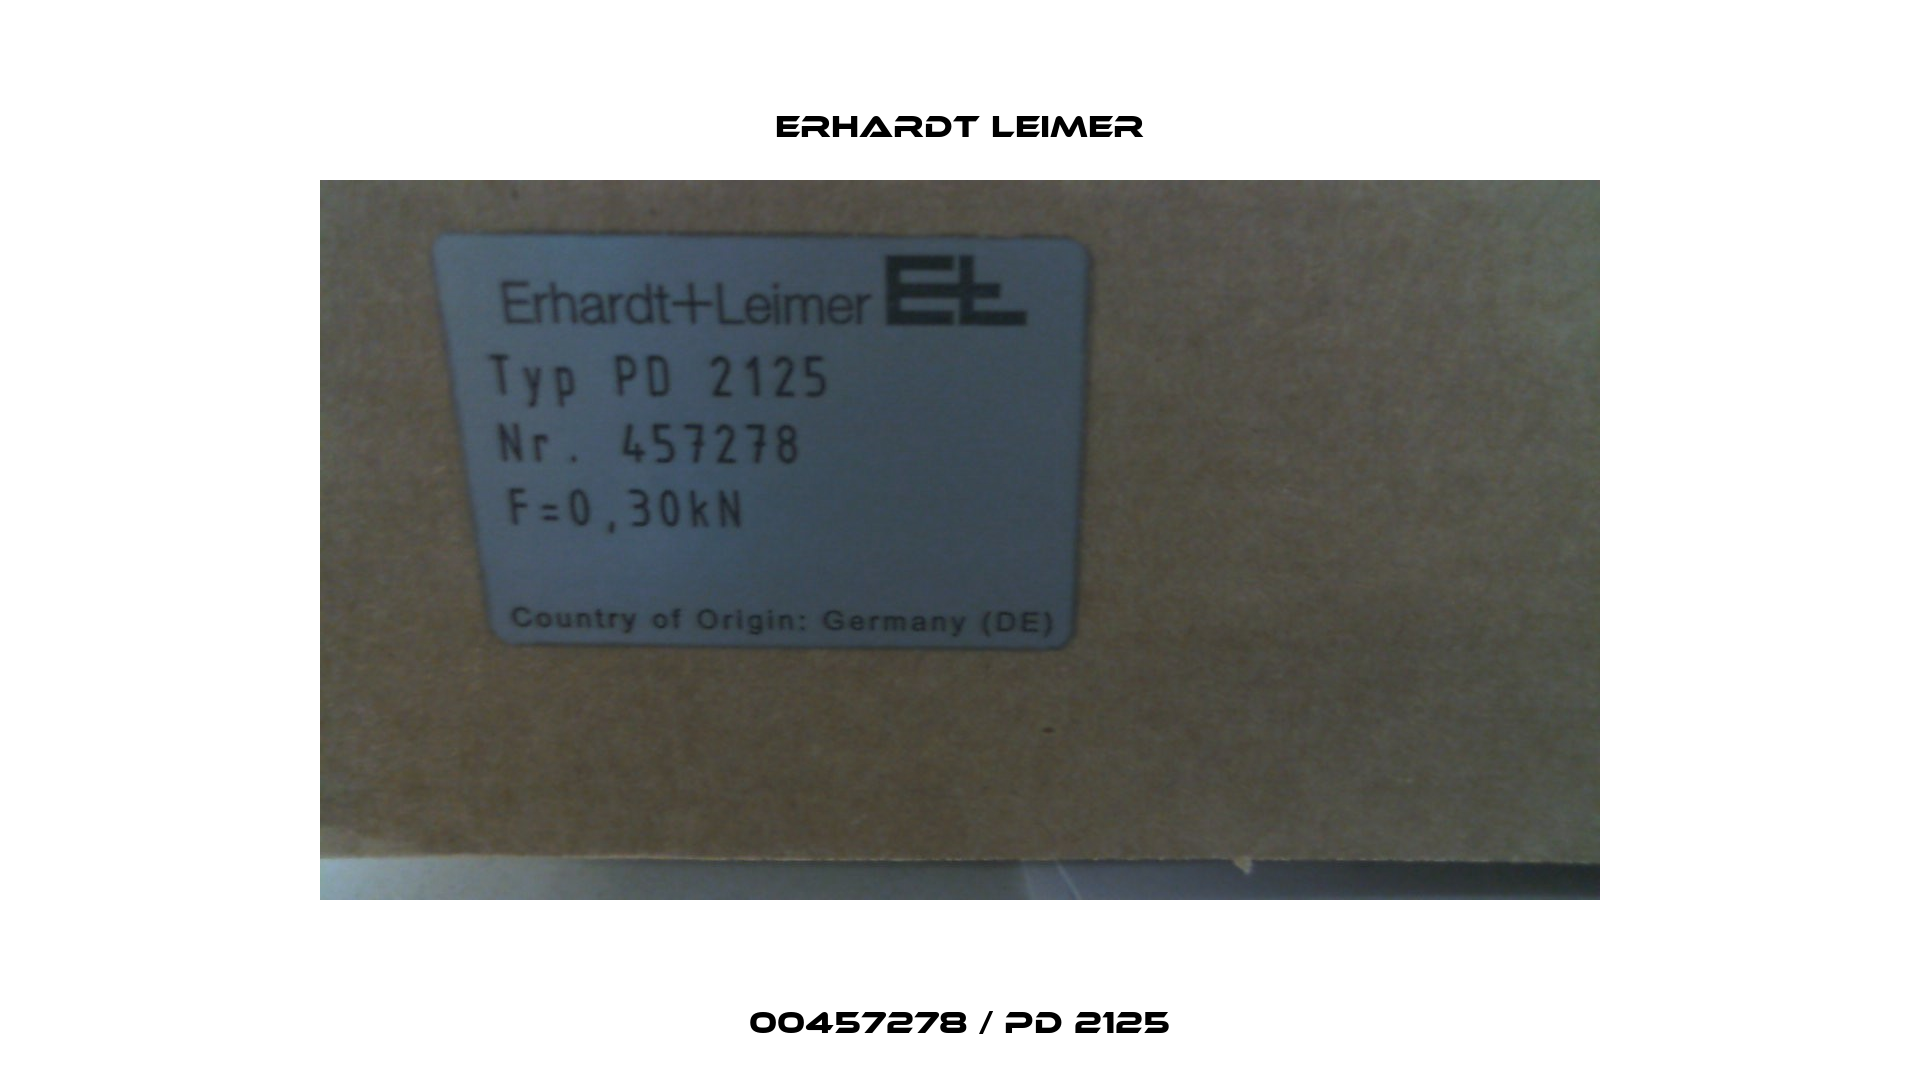 00457278 / PD 2125 Erhardt Leimer